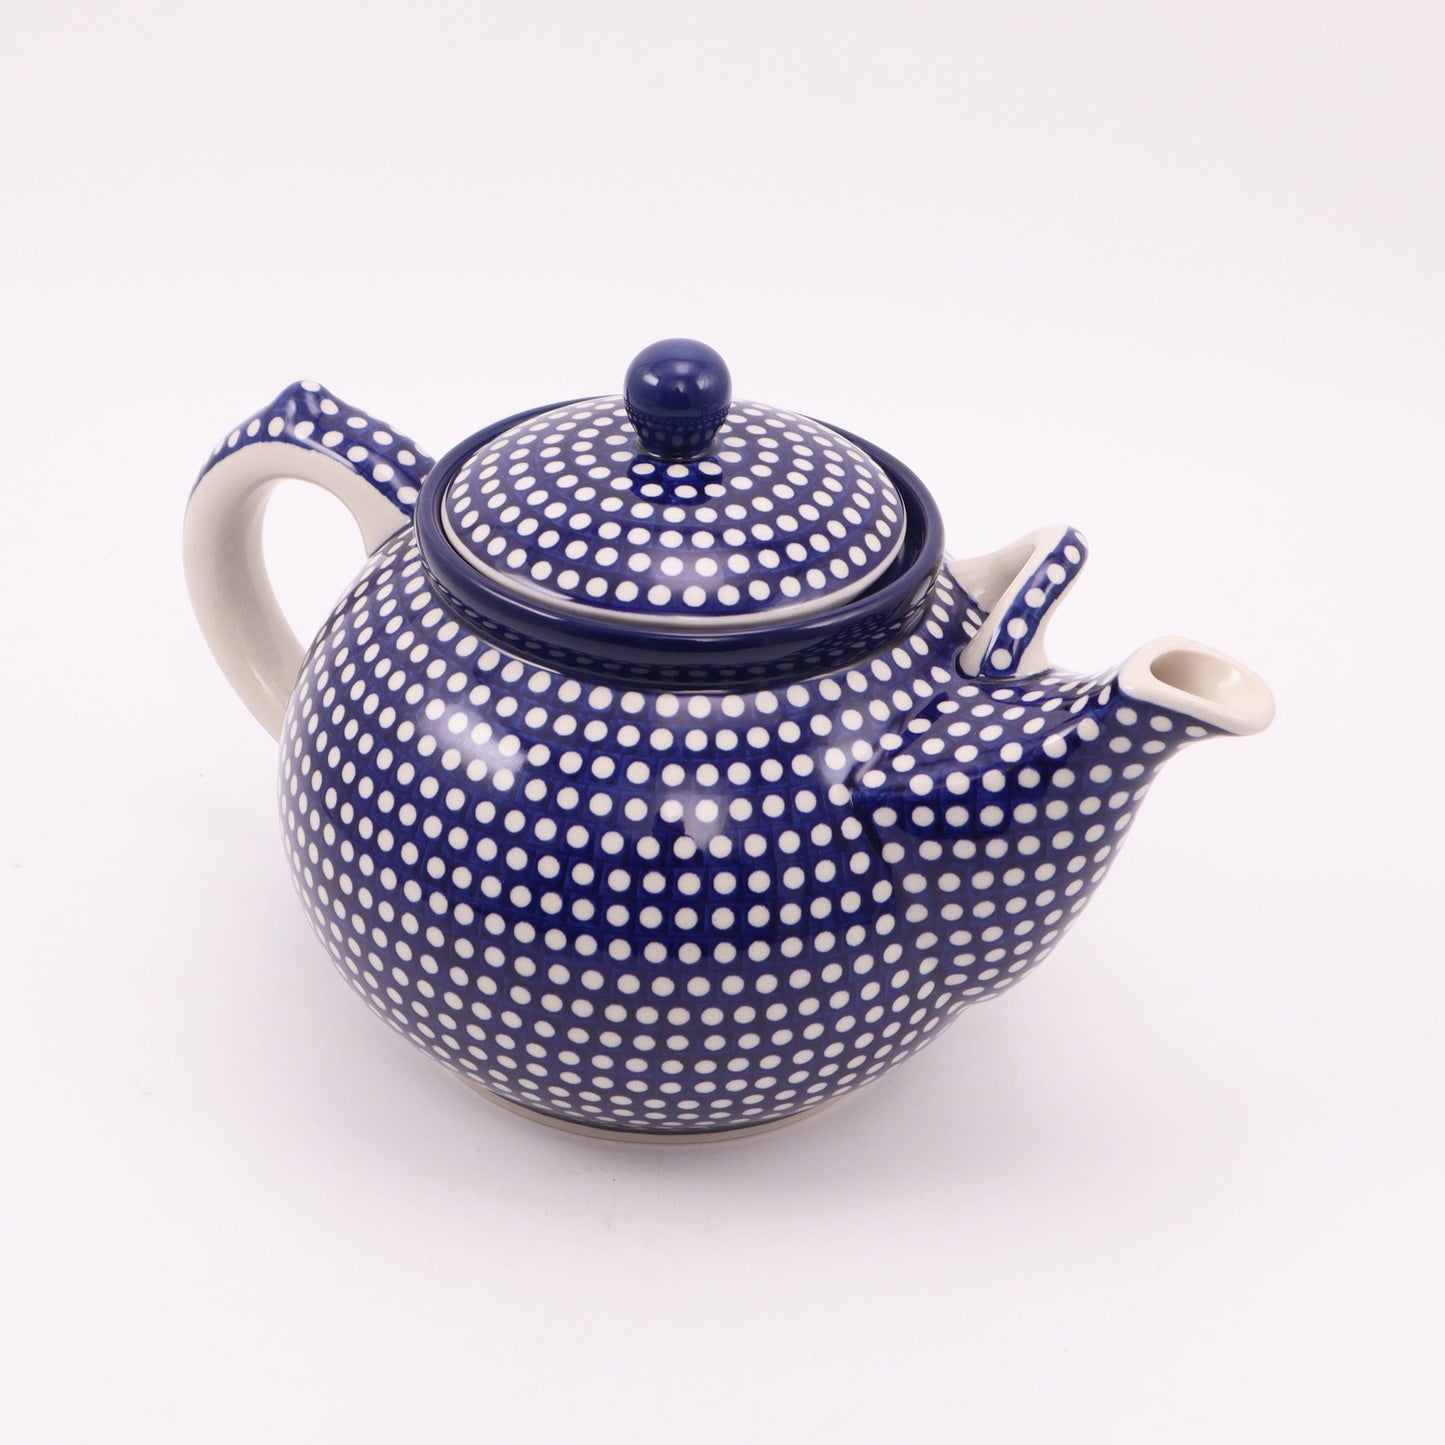 3L Teapot. Pattern: Dot to Dot